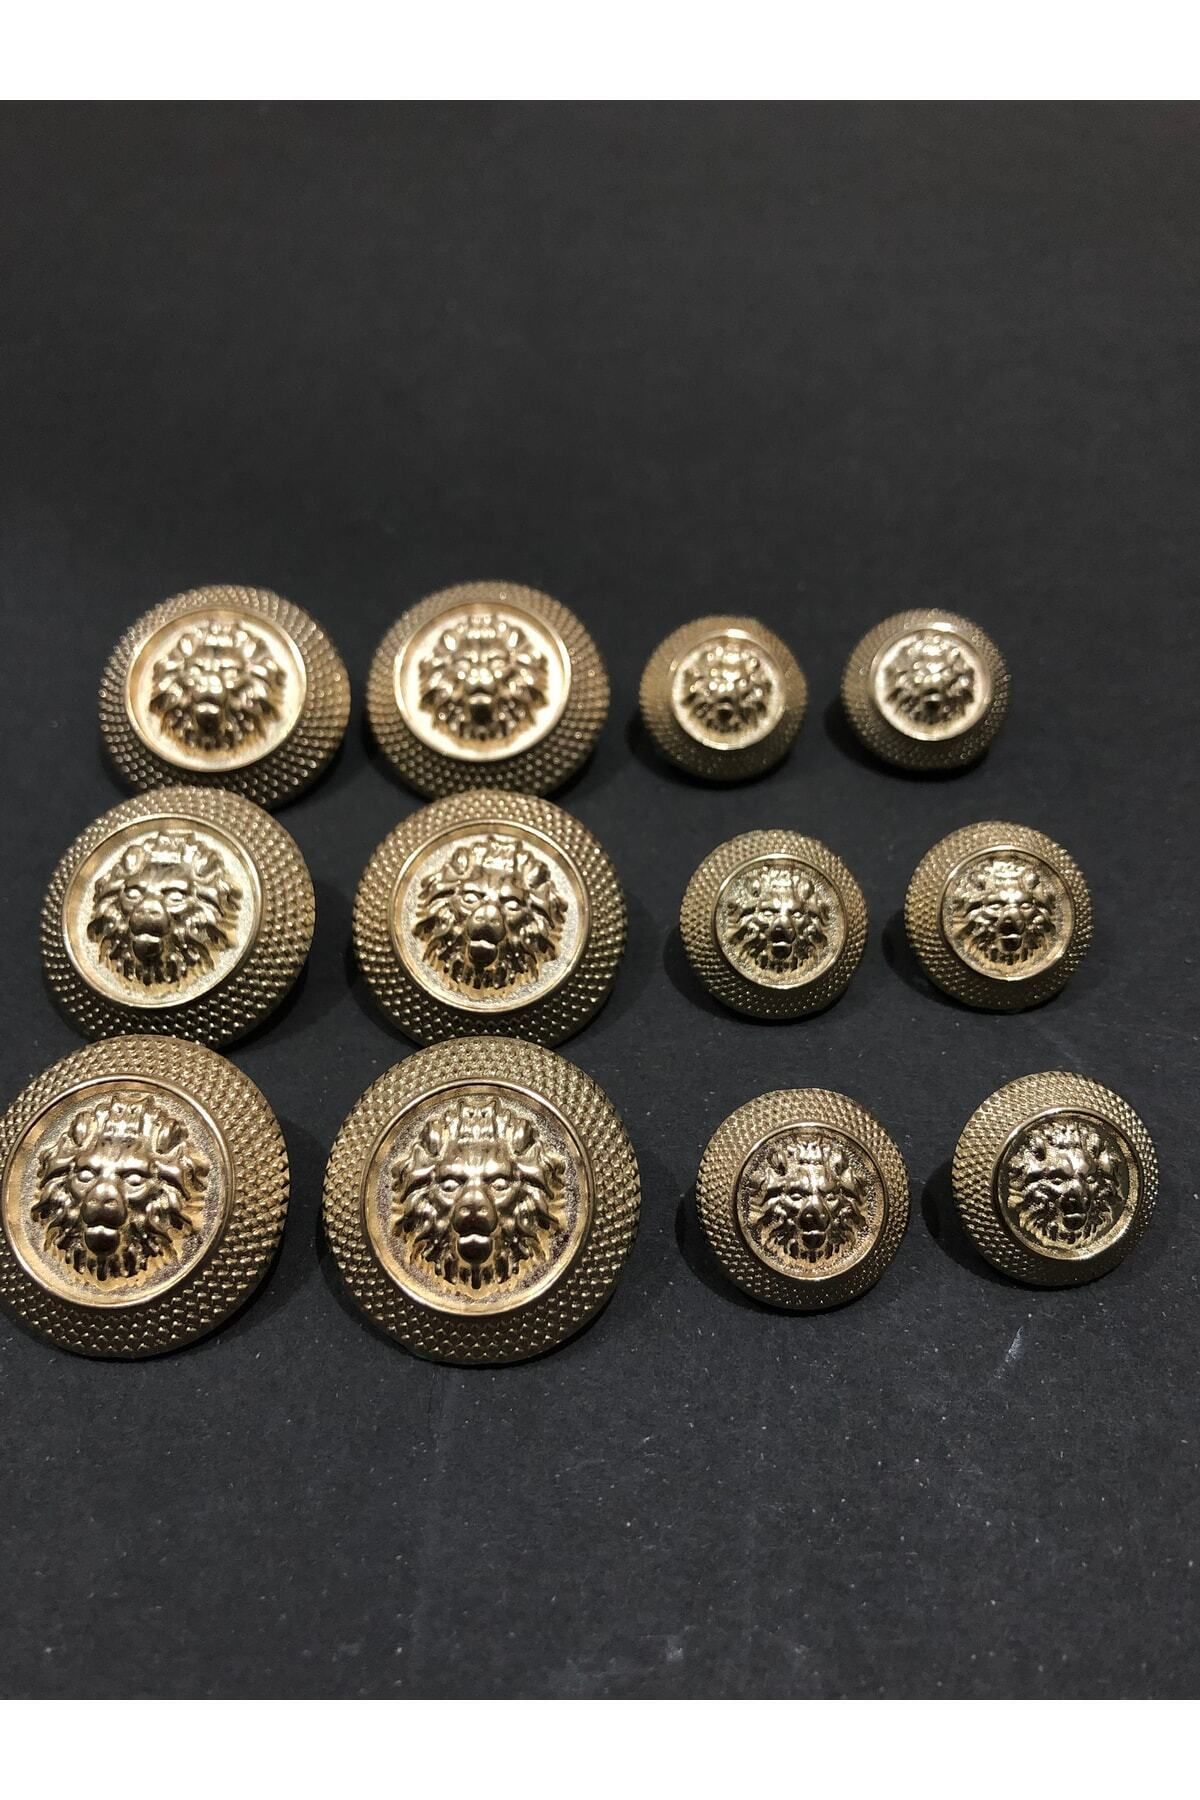 aensia Gold Renk Aslan Model Düğme Metal Düğme Trençkot Ceket Düğmesi -12li Düğme Paketi (6 BÜYÜK 6 KÜÇÜK)